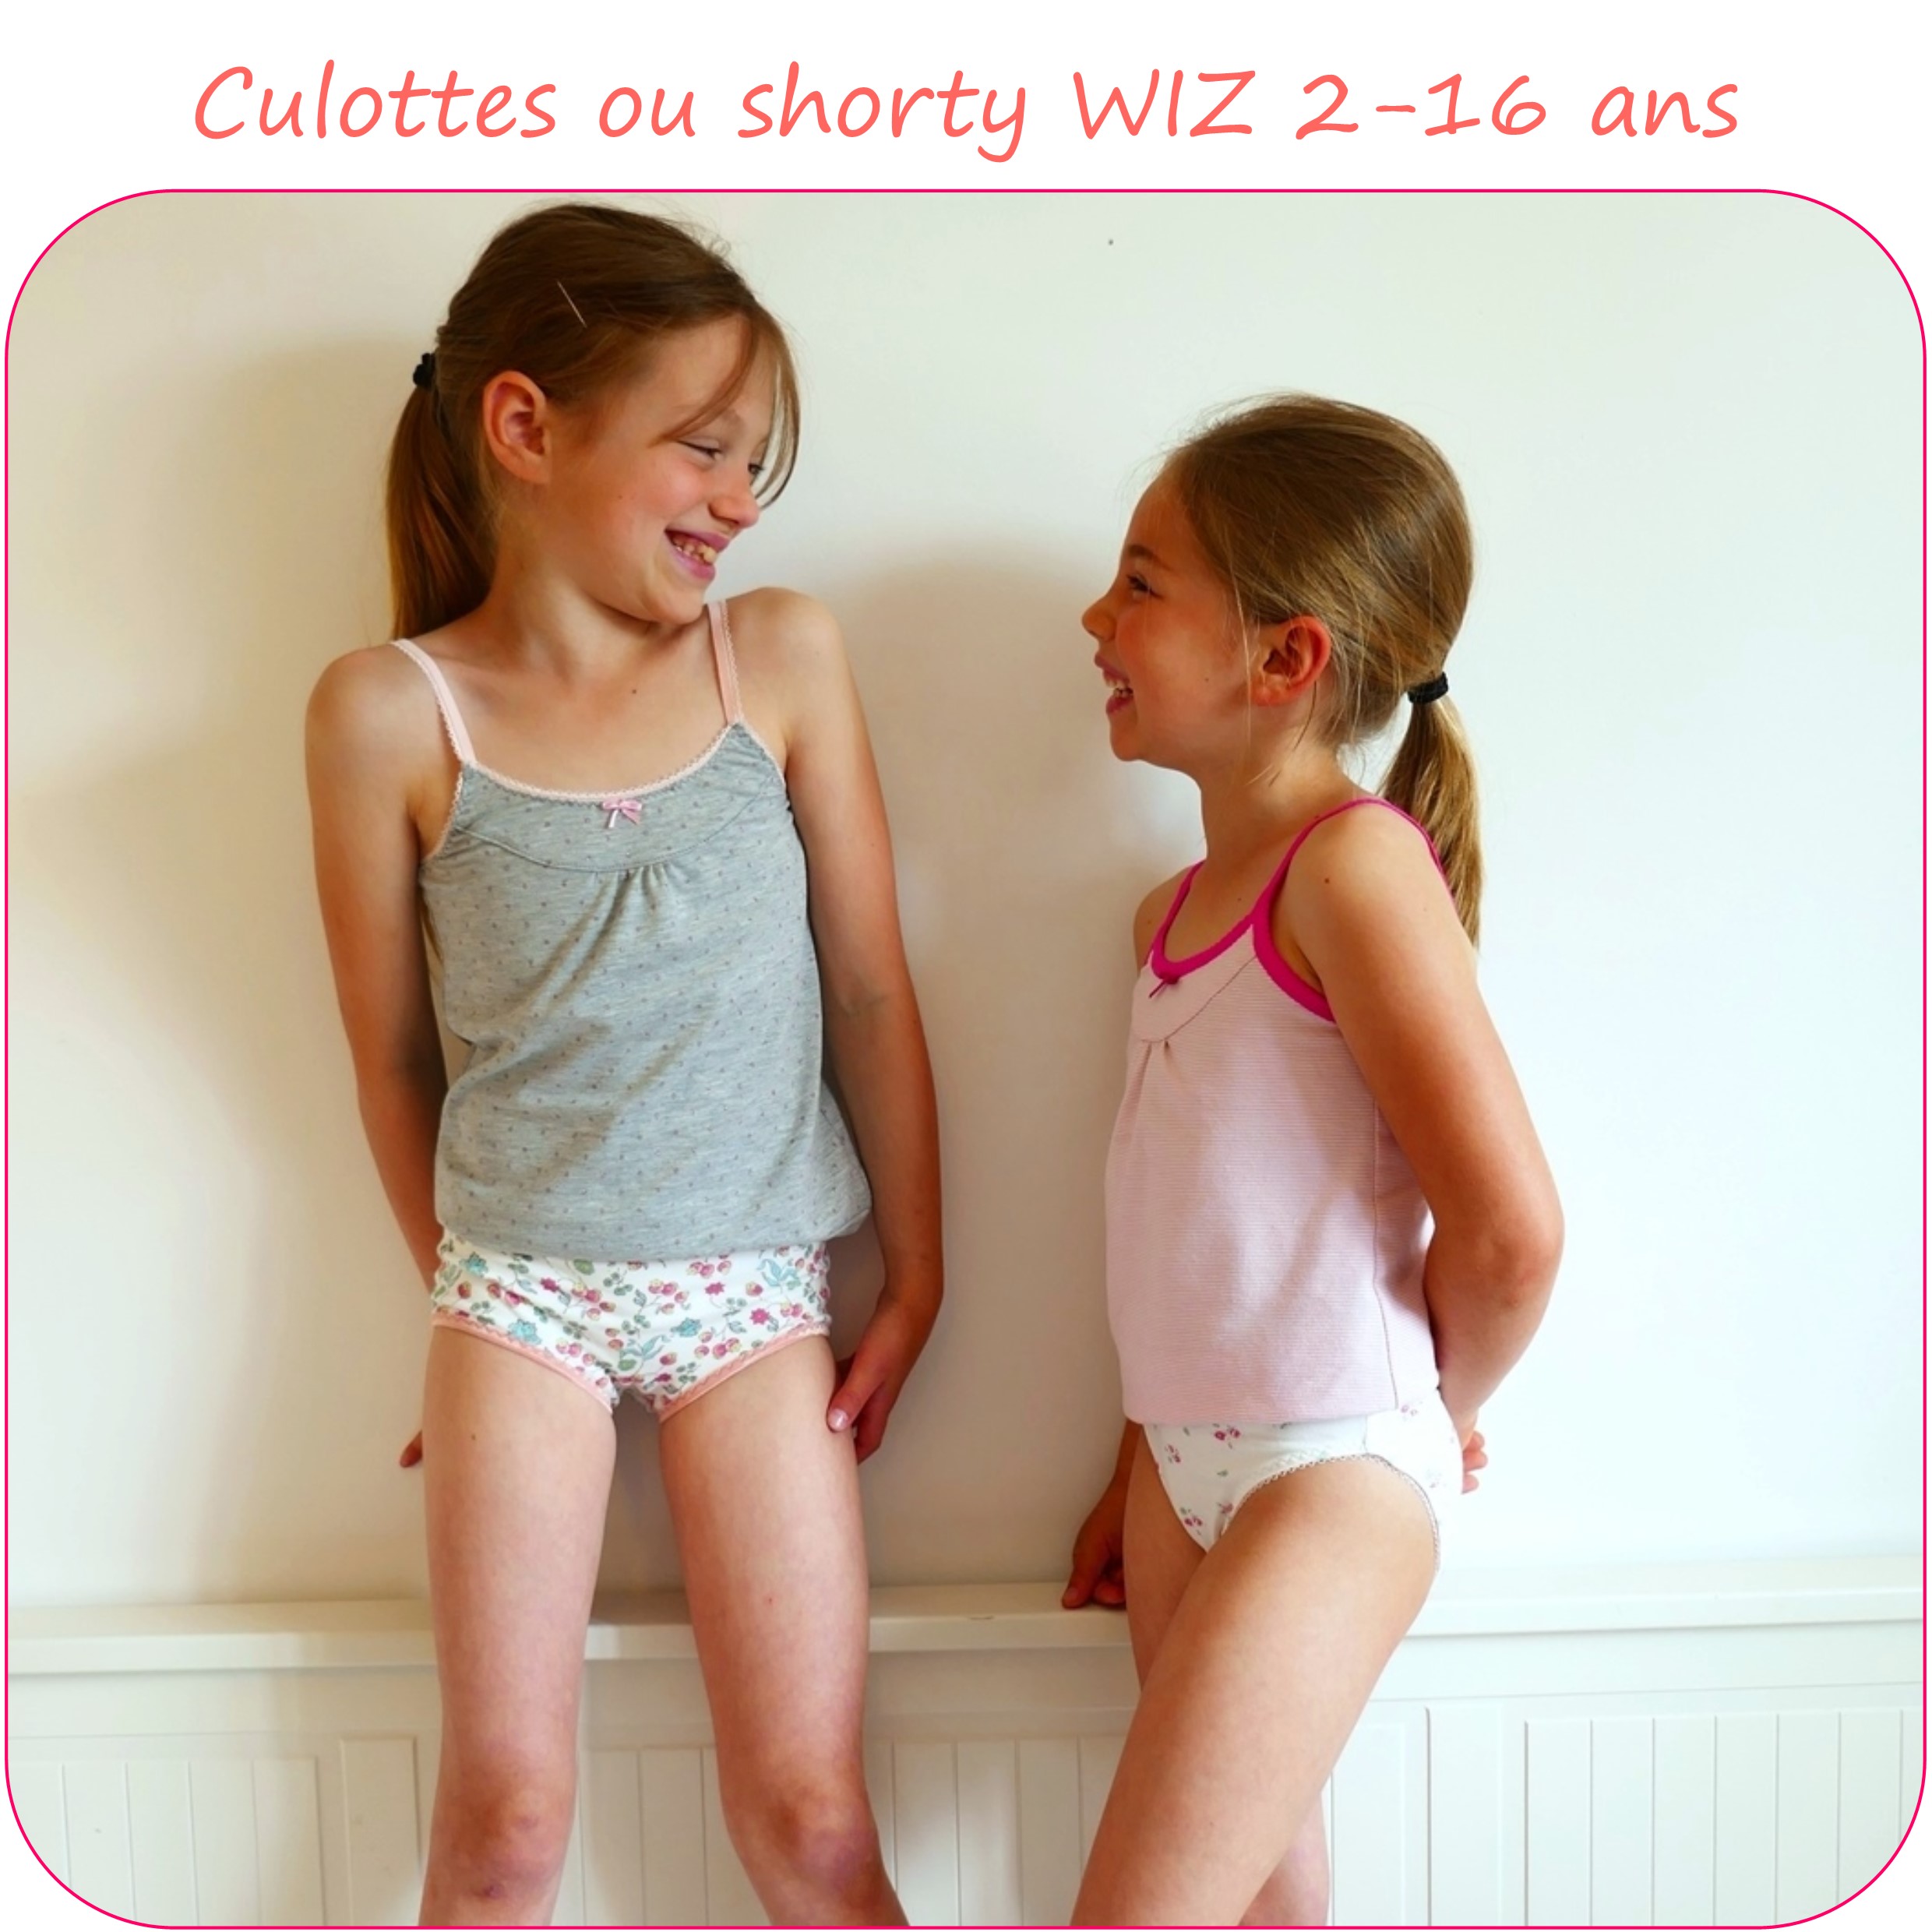 WIZ – Patron de culotte ou shorty du 2 au 16 ans - Petits D'om